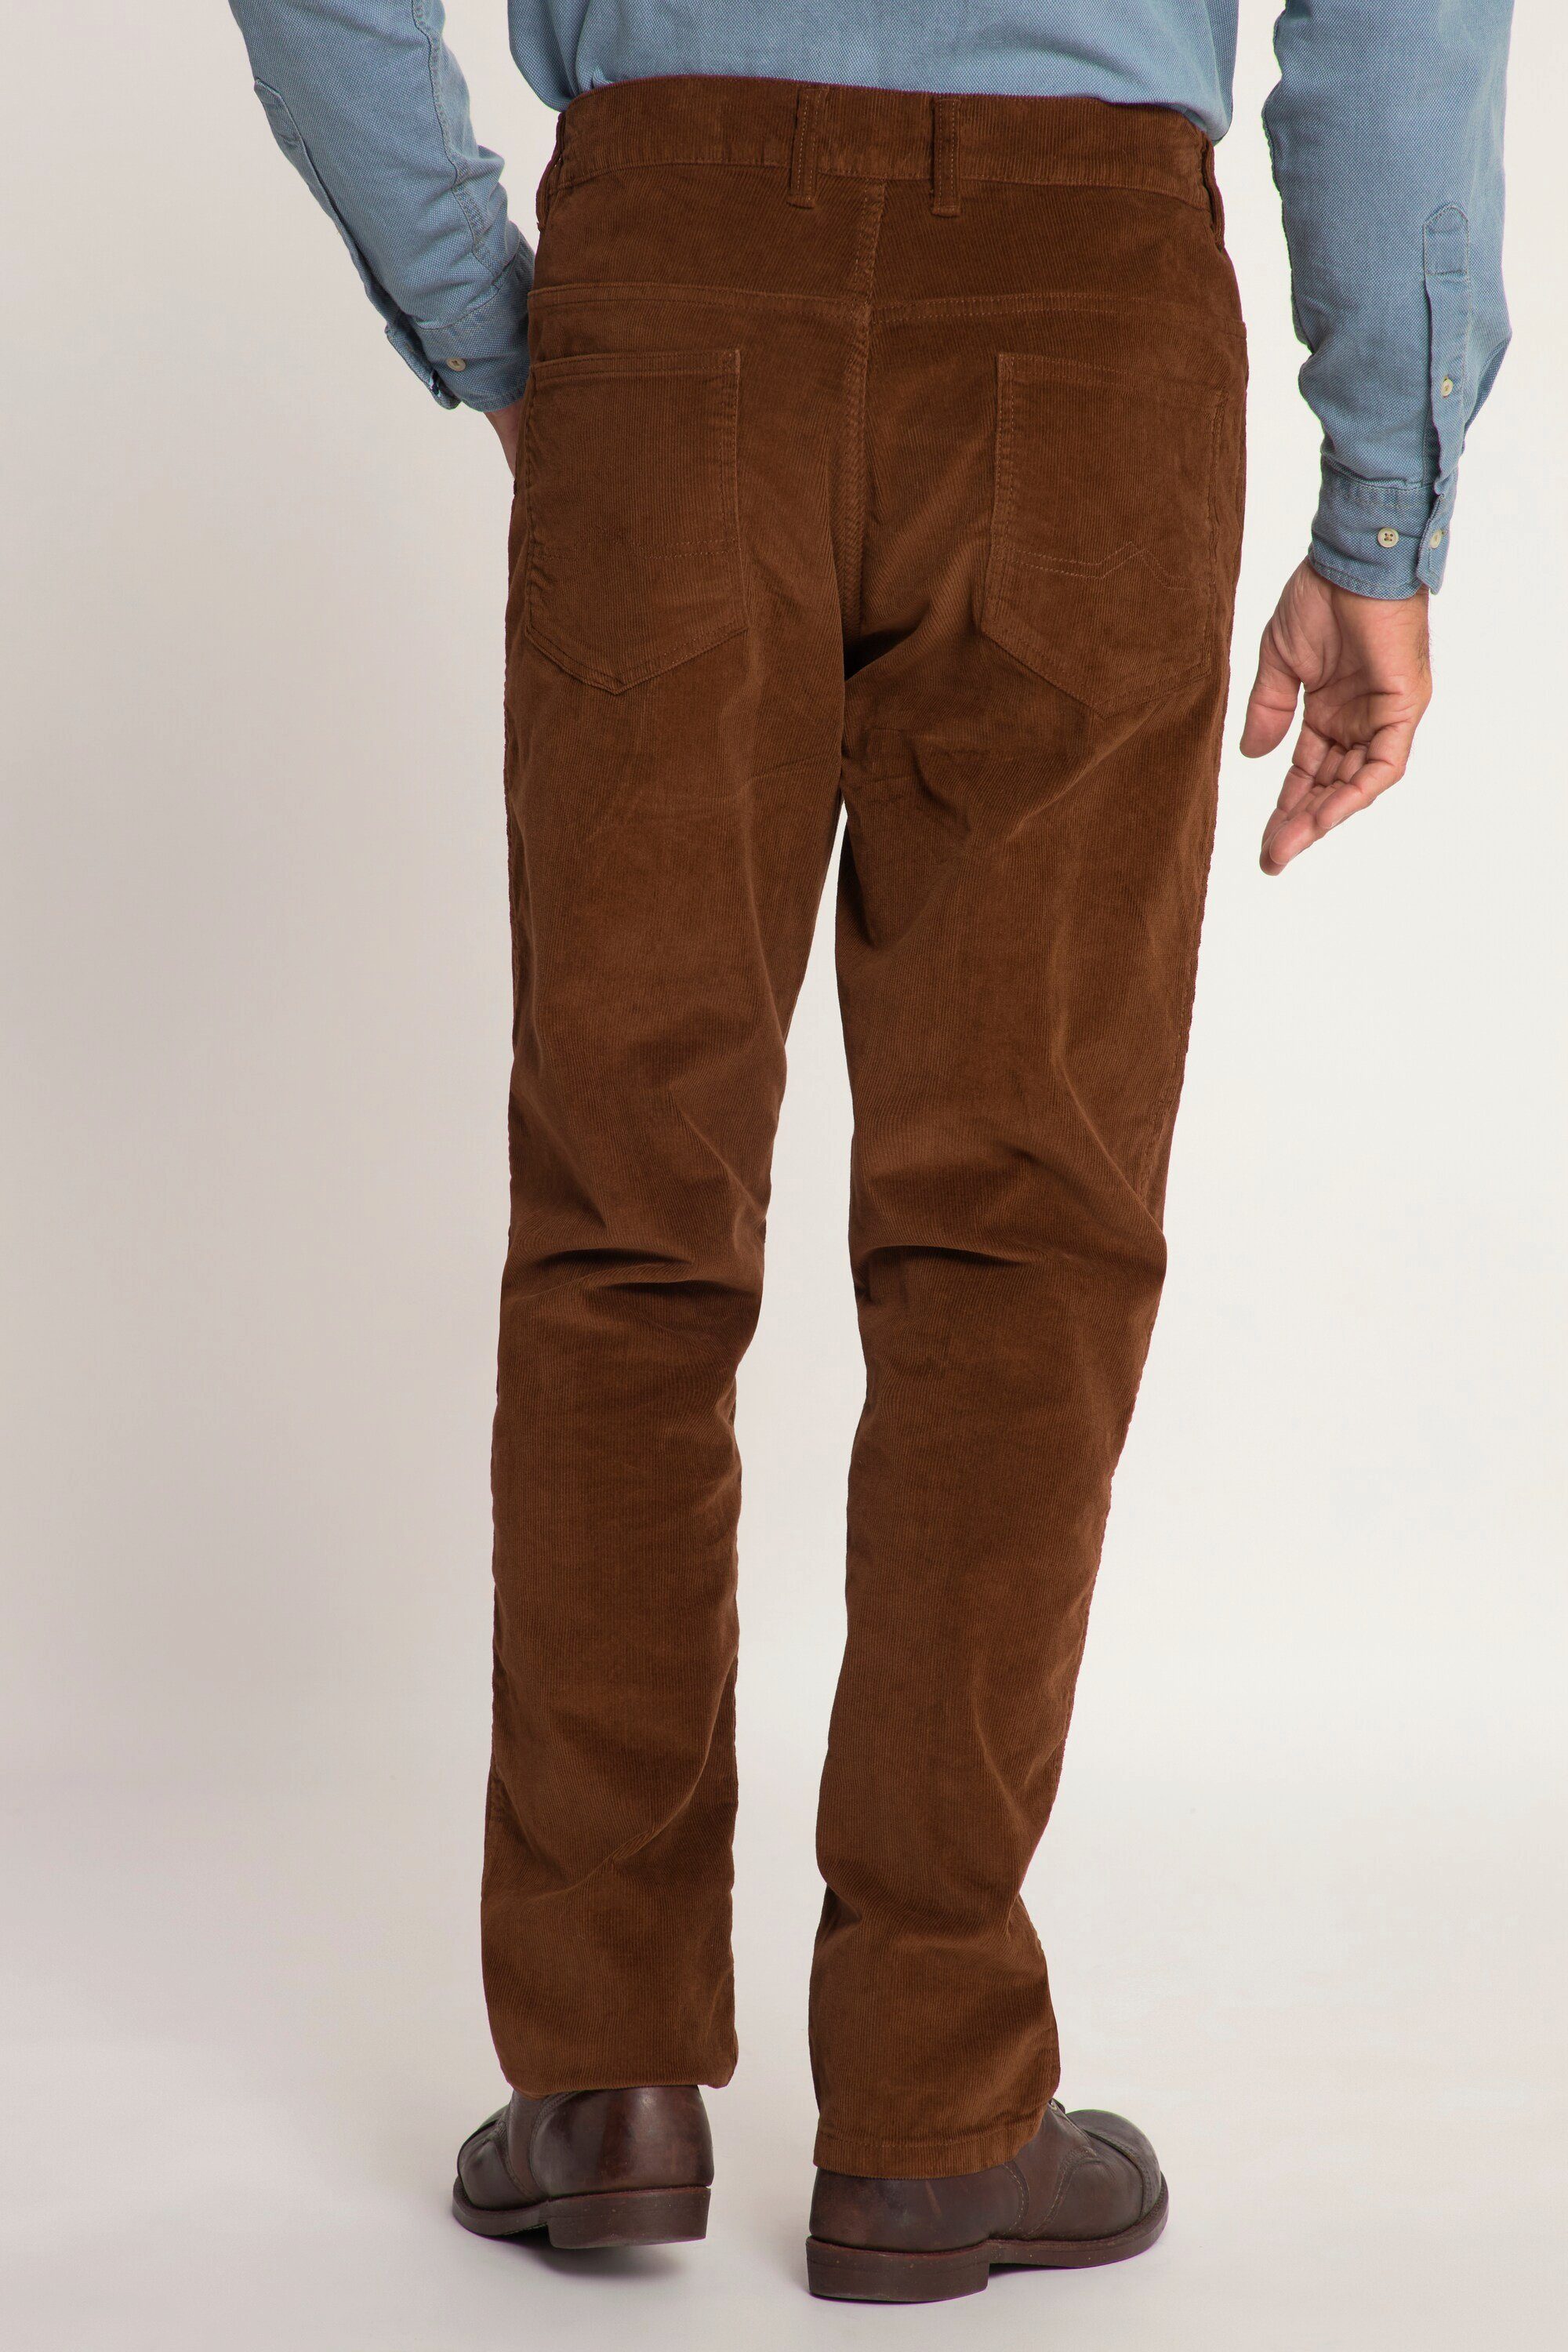 Cordhose 5-Pocket JP1880 elastischer 5-Pocket-Jeans seitlich Bund mahagonibraun